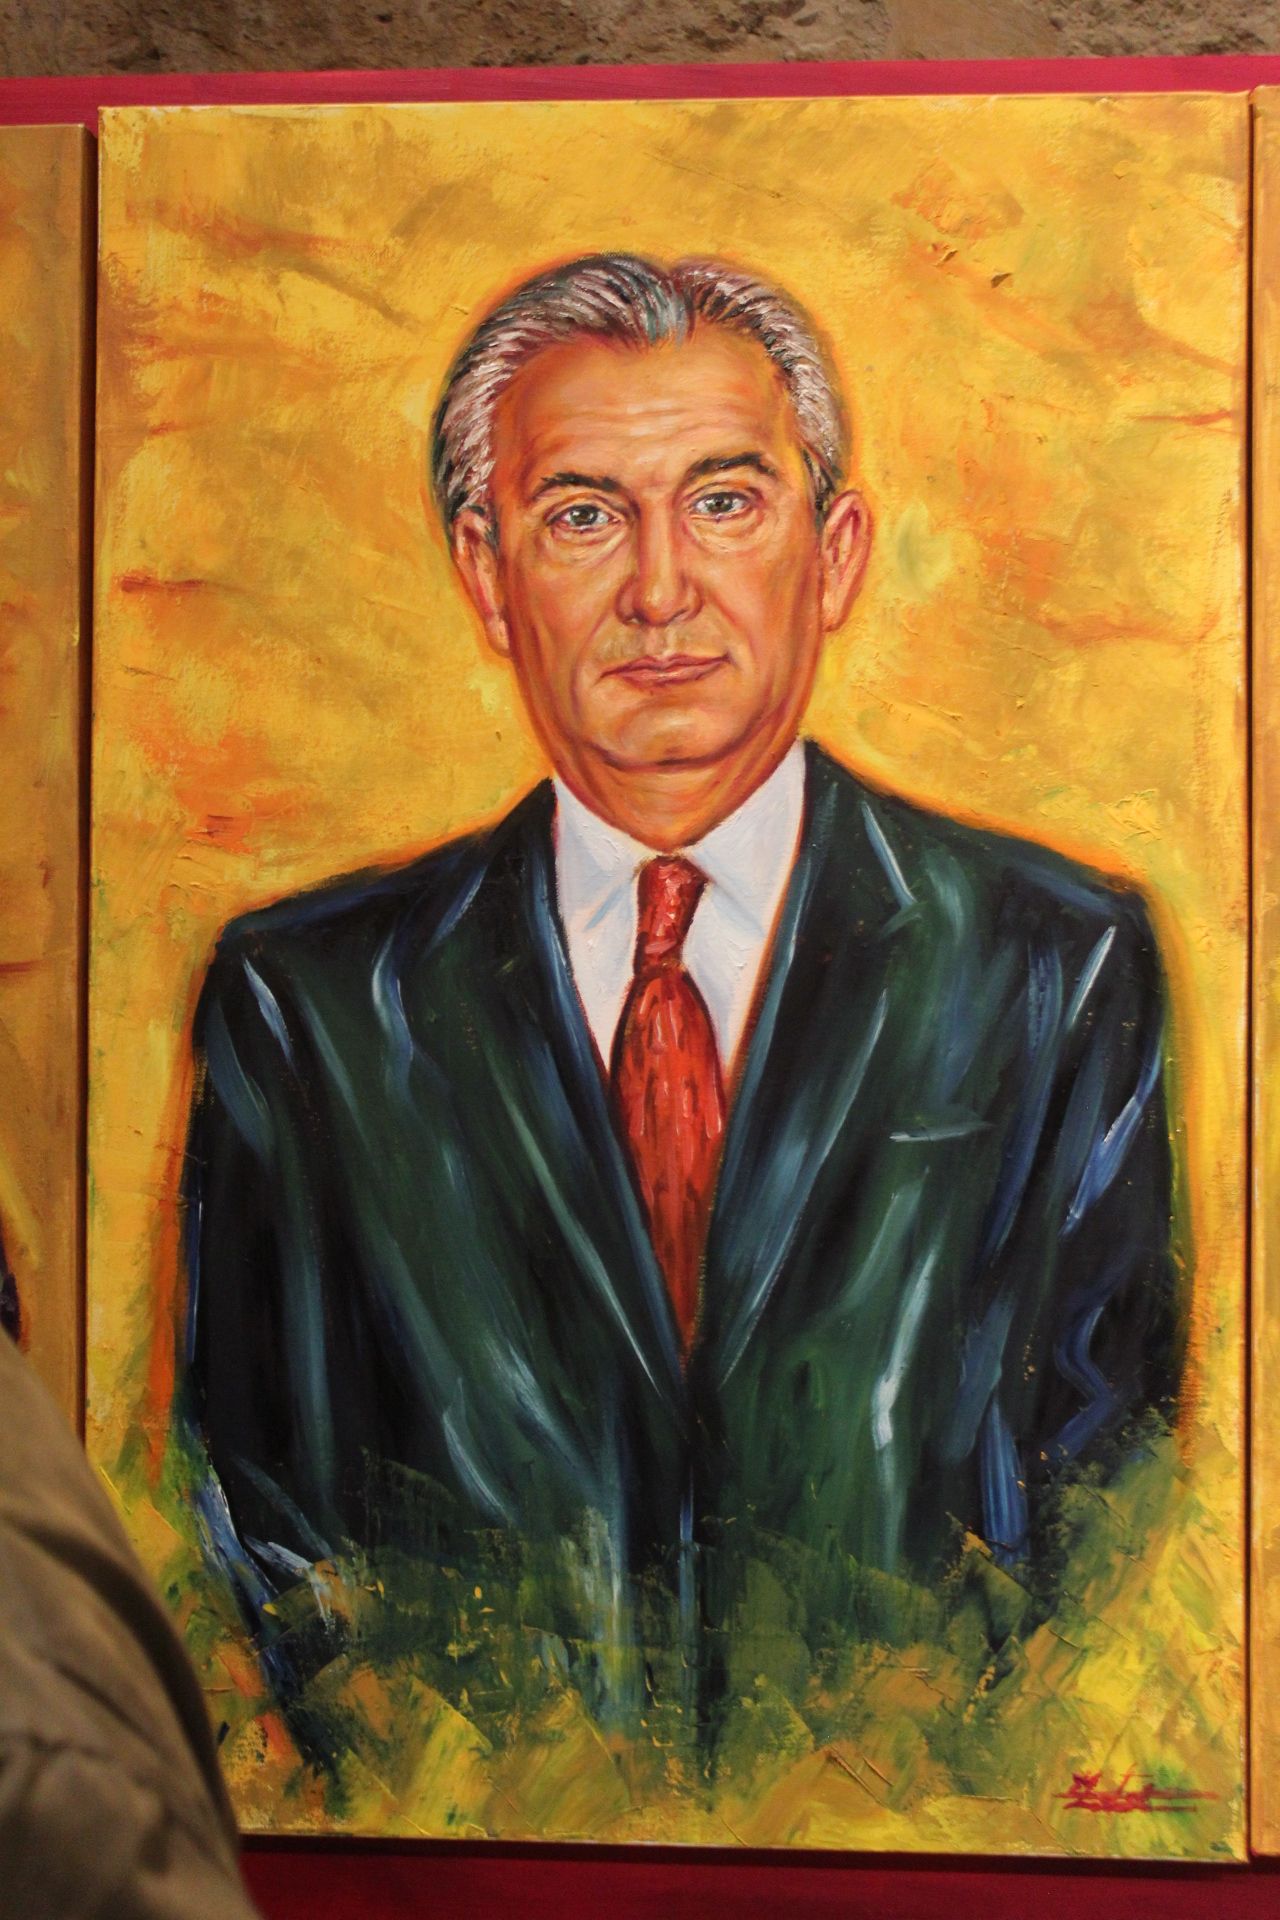 Juan Morano Masa, alcalde por Unión del Centro Democrático en 1979-87 y por el PP en 1989-95